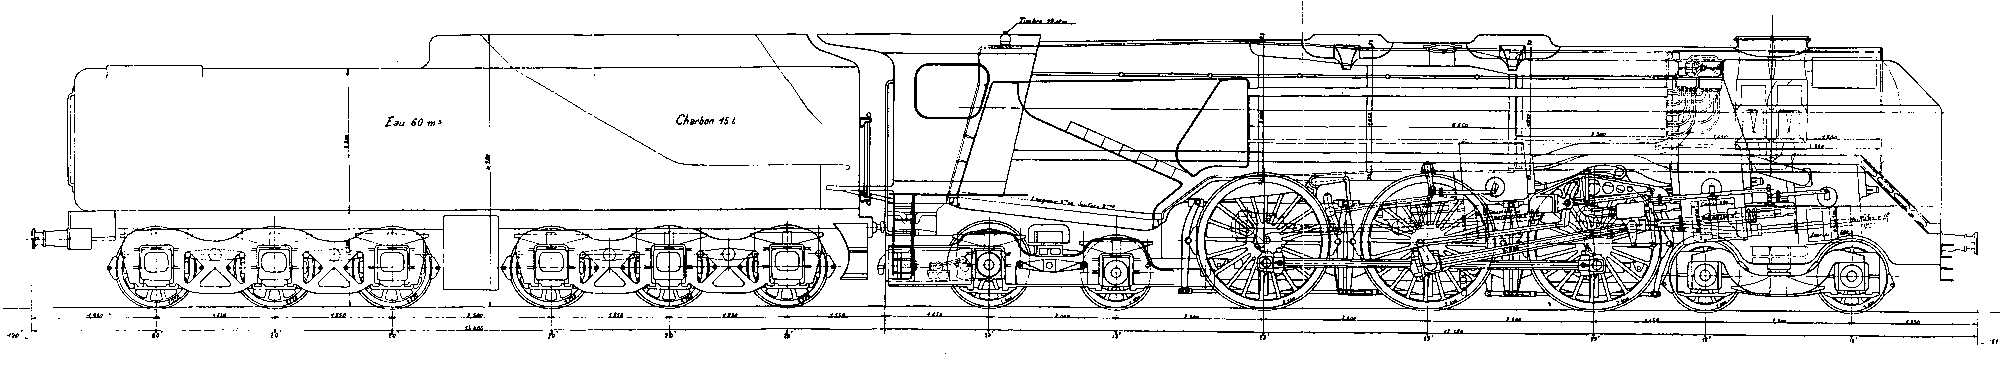 Chapelon design for a 125mph 6000hp 4-6-4 passenger locomotive.